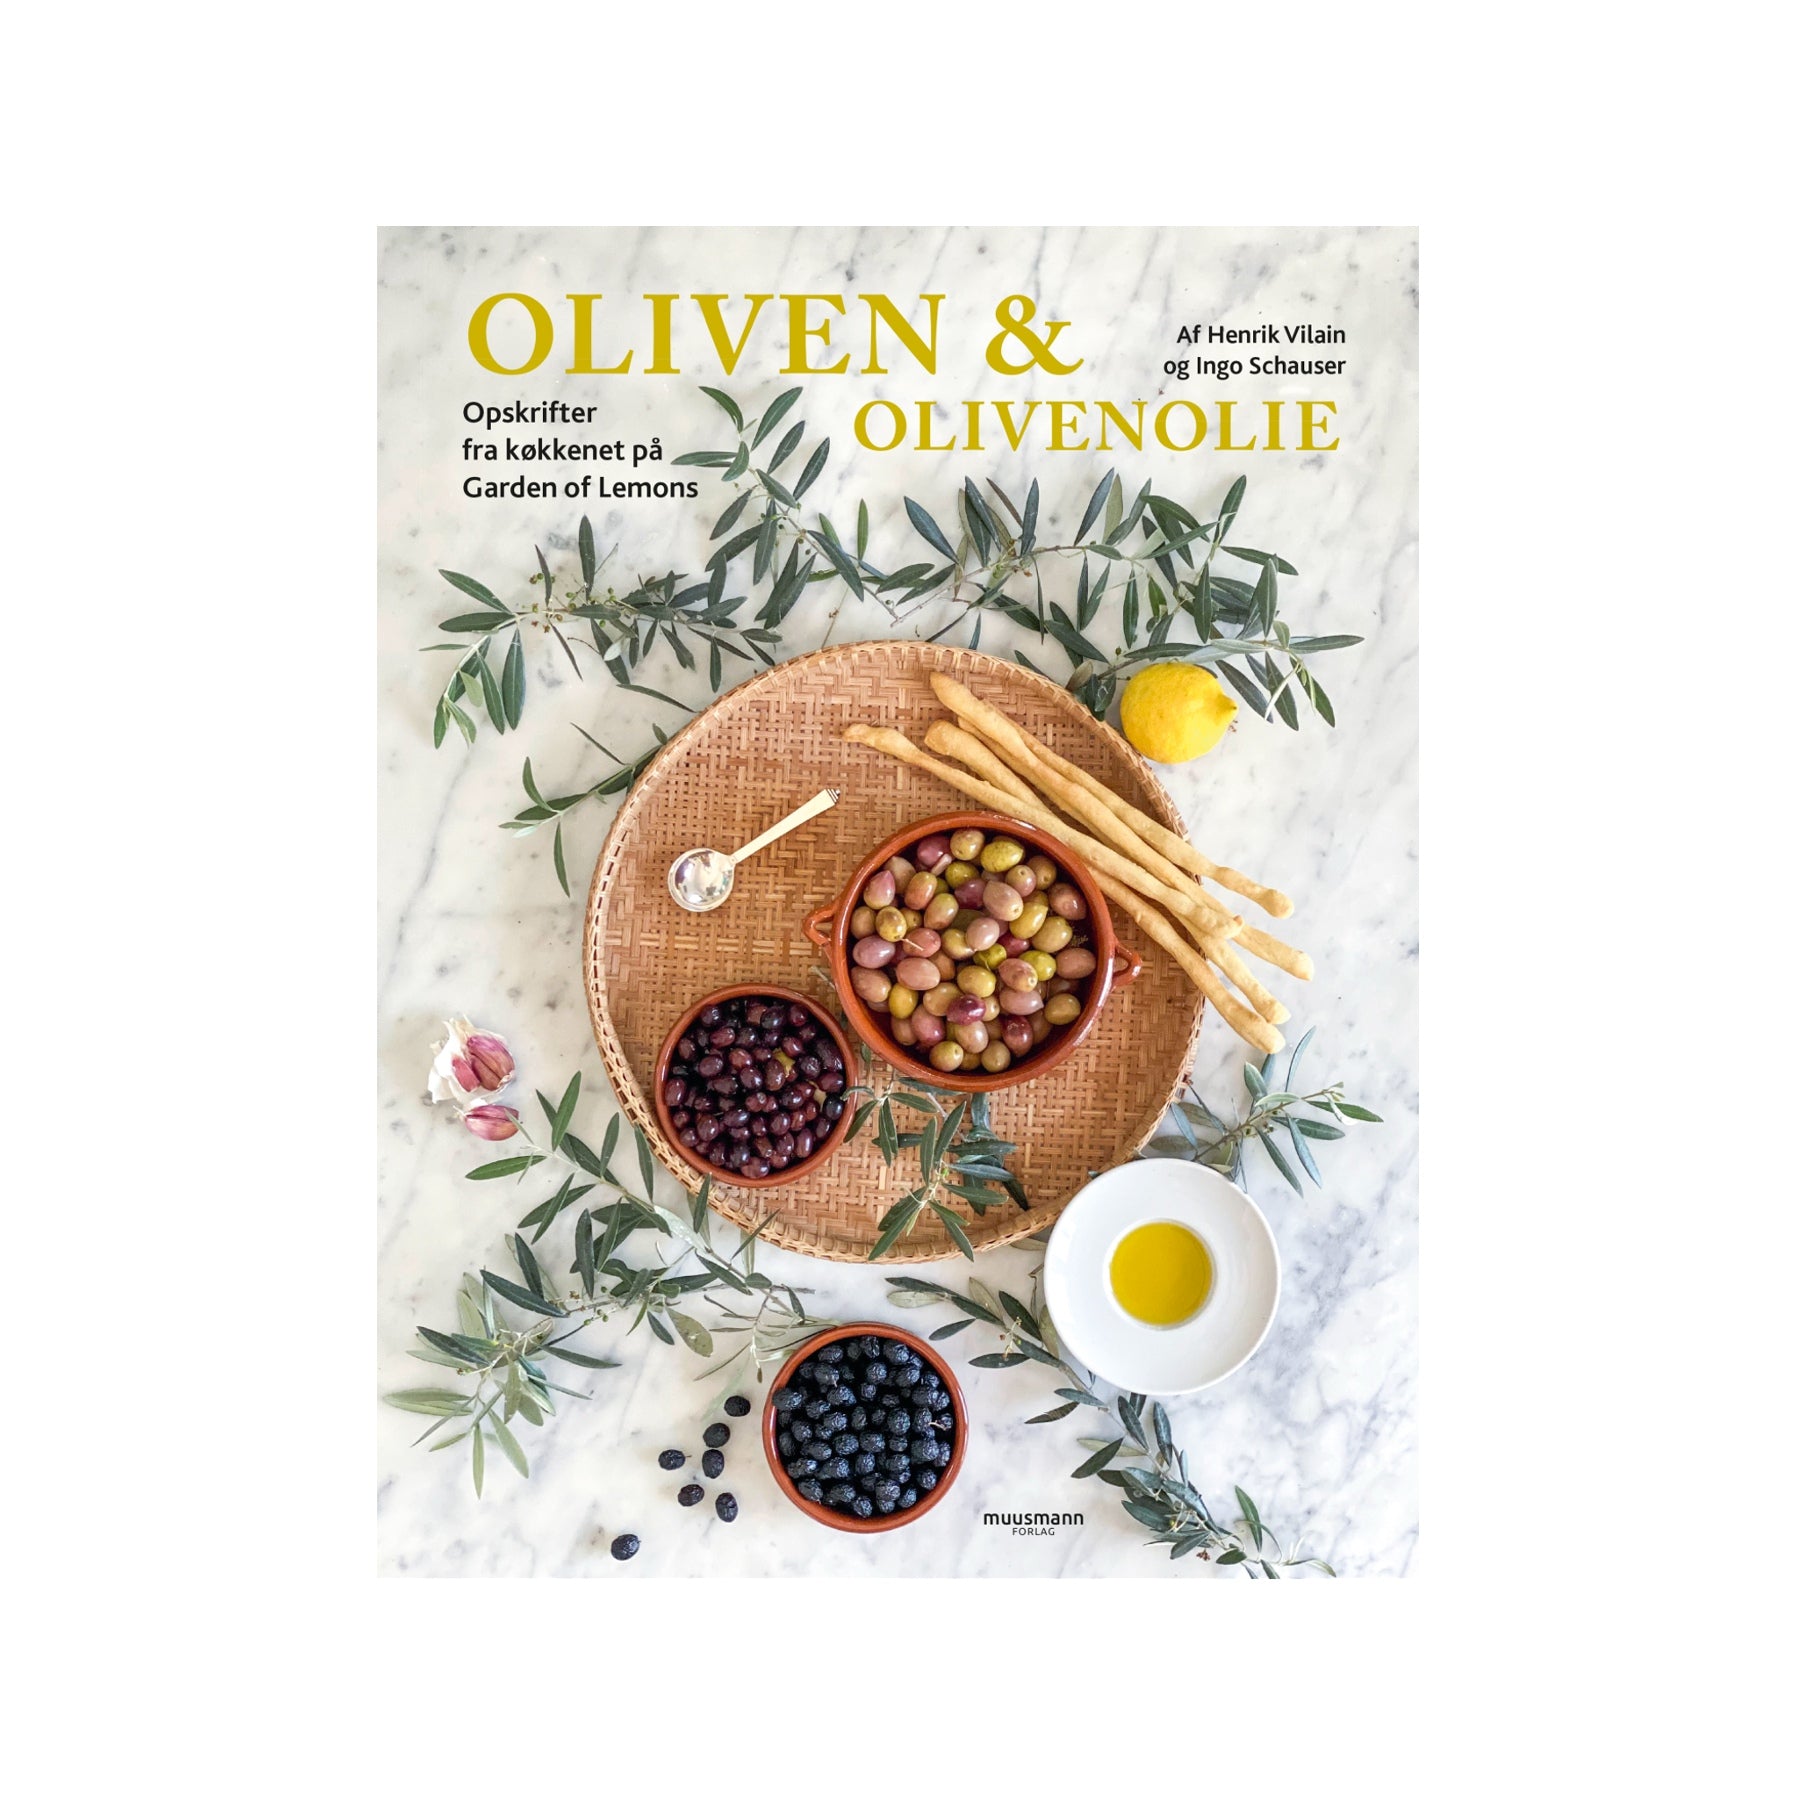 Kogebog oliven & olivenolie af Vilain og Schauser hos Oliviers & Co